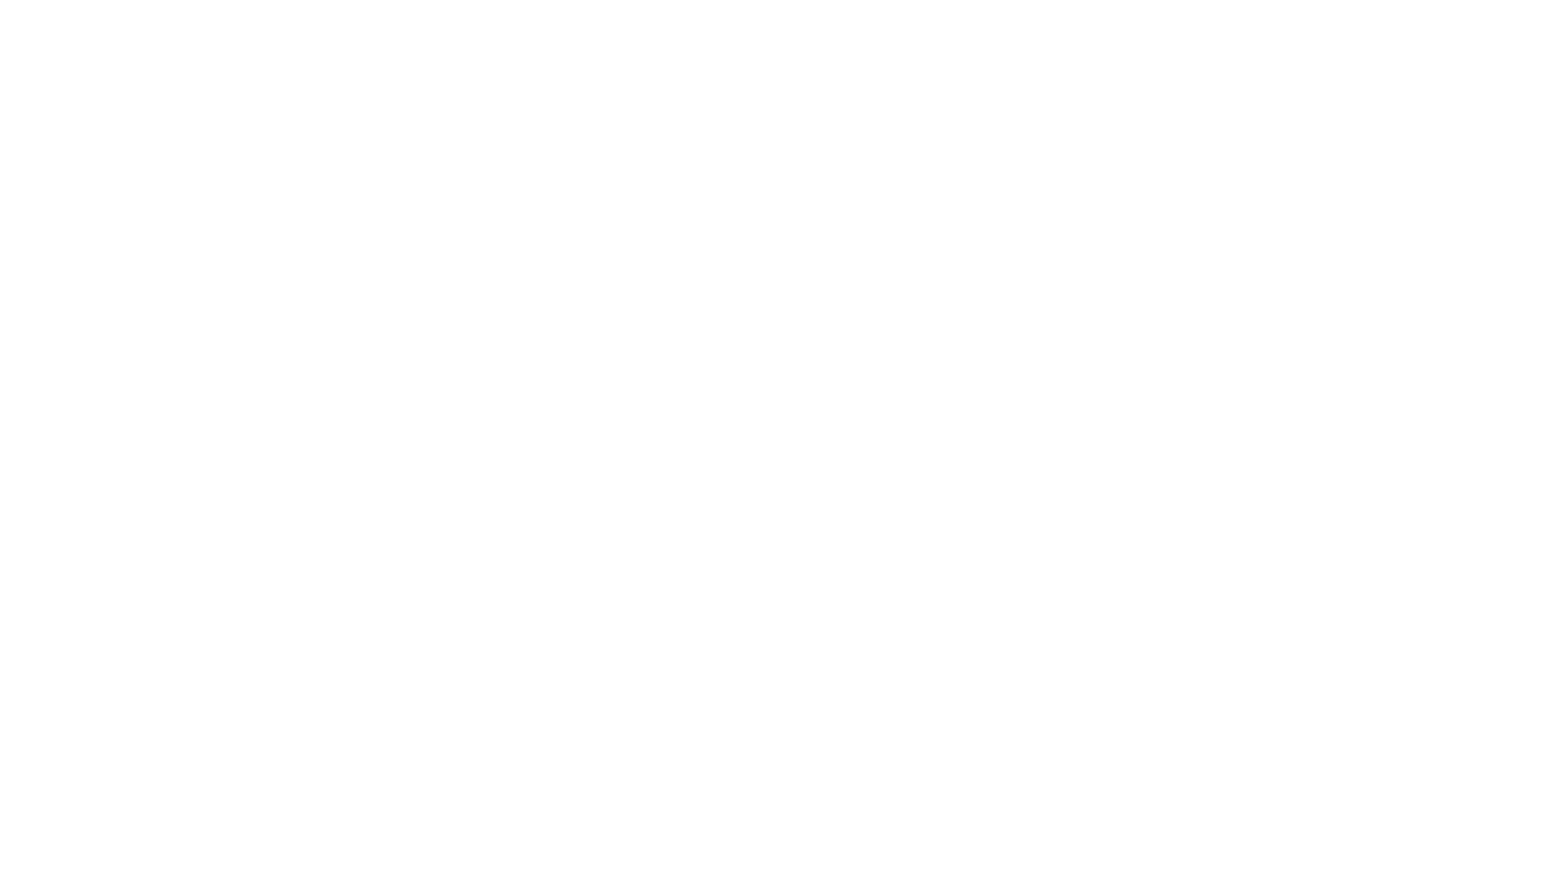 Президент России Владимир Путин, премьер-министр Крыма Сергей Аксенов (слева), мэр Севастополя Алексей Чалый (справа) и Владимир Константинов (2-й слева) присутствуют на церемонии подписания договора об аннексии Крыма и формировании новых федеральных округов на совещании Председателя Верховного Совета Крыма 18 марта 2014 года в Москве